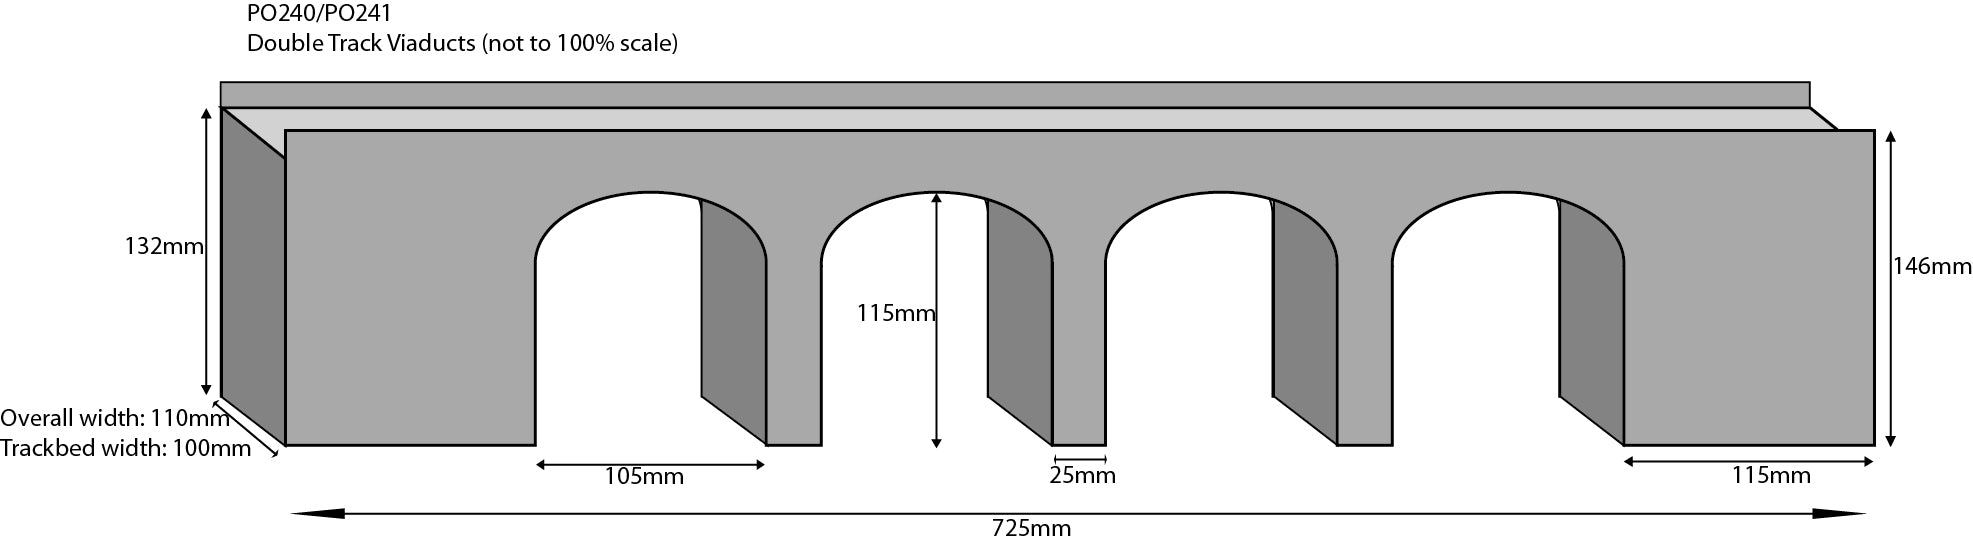 Metcalfe PO241 Double Track Stone Viaduct Card Kit - OO / HO Scale